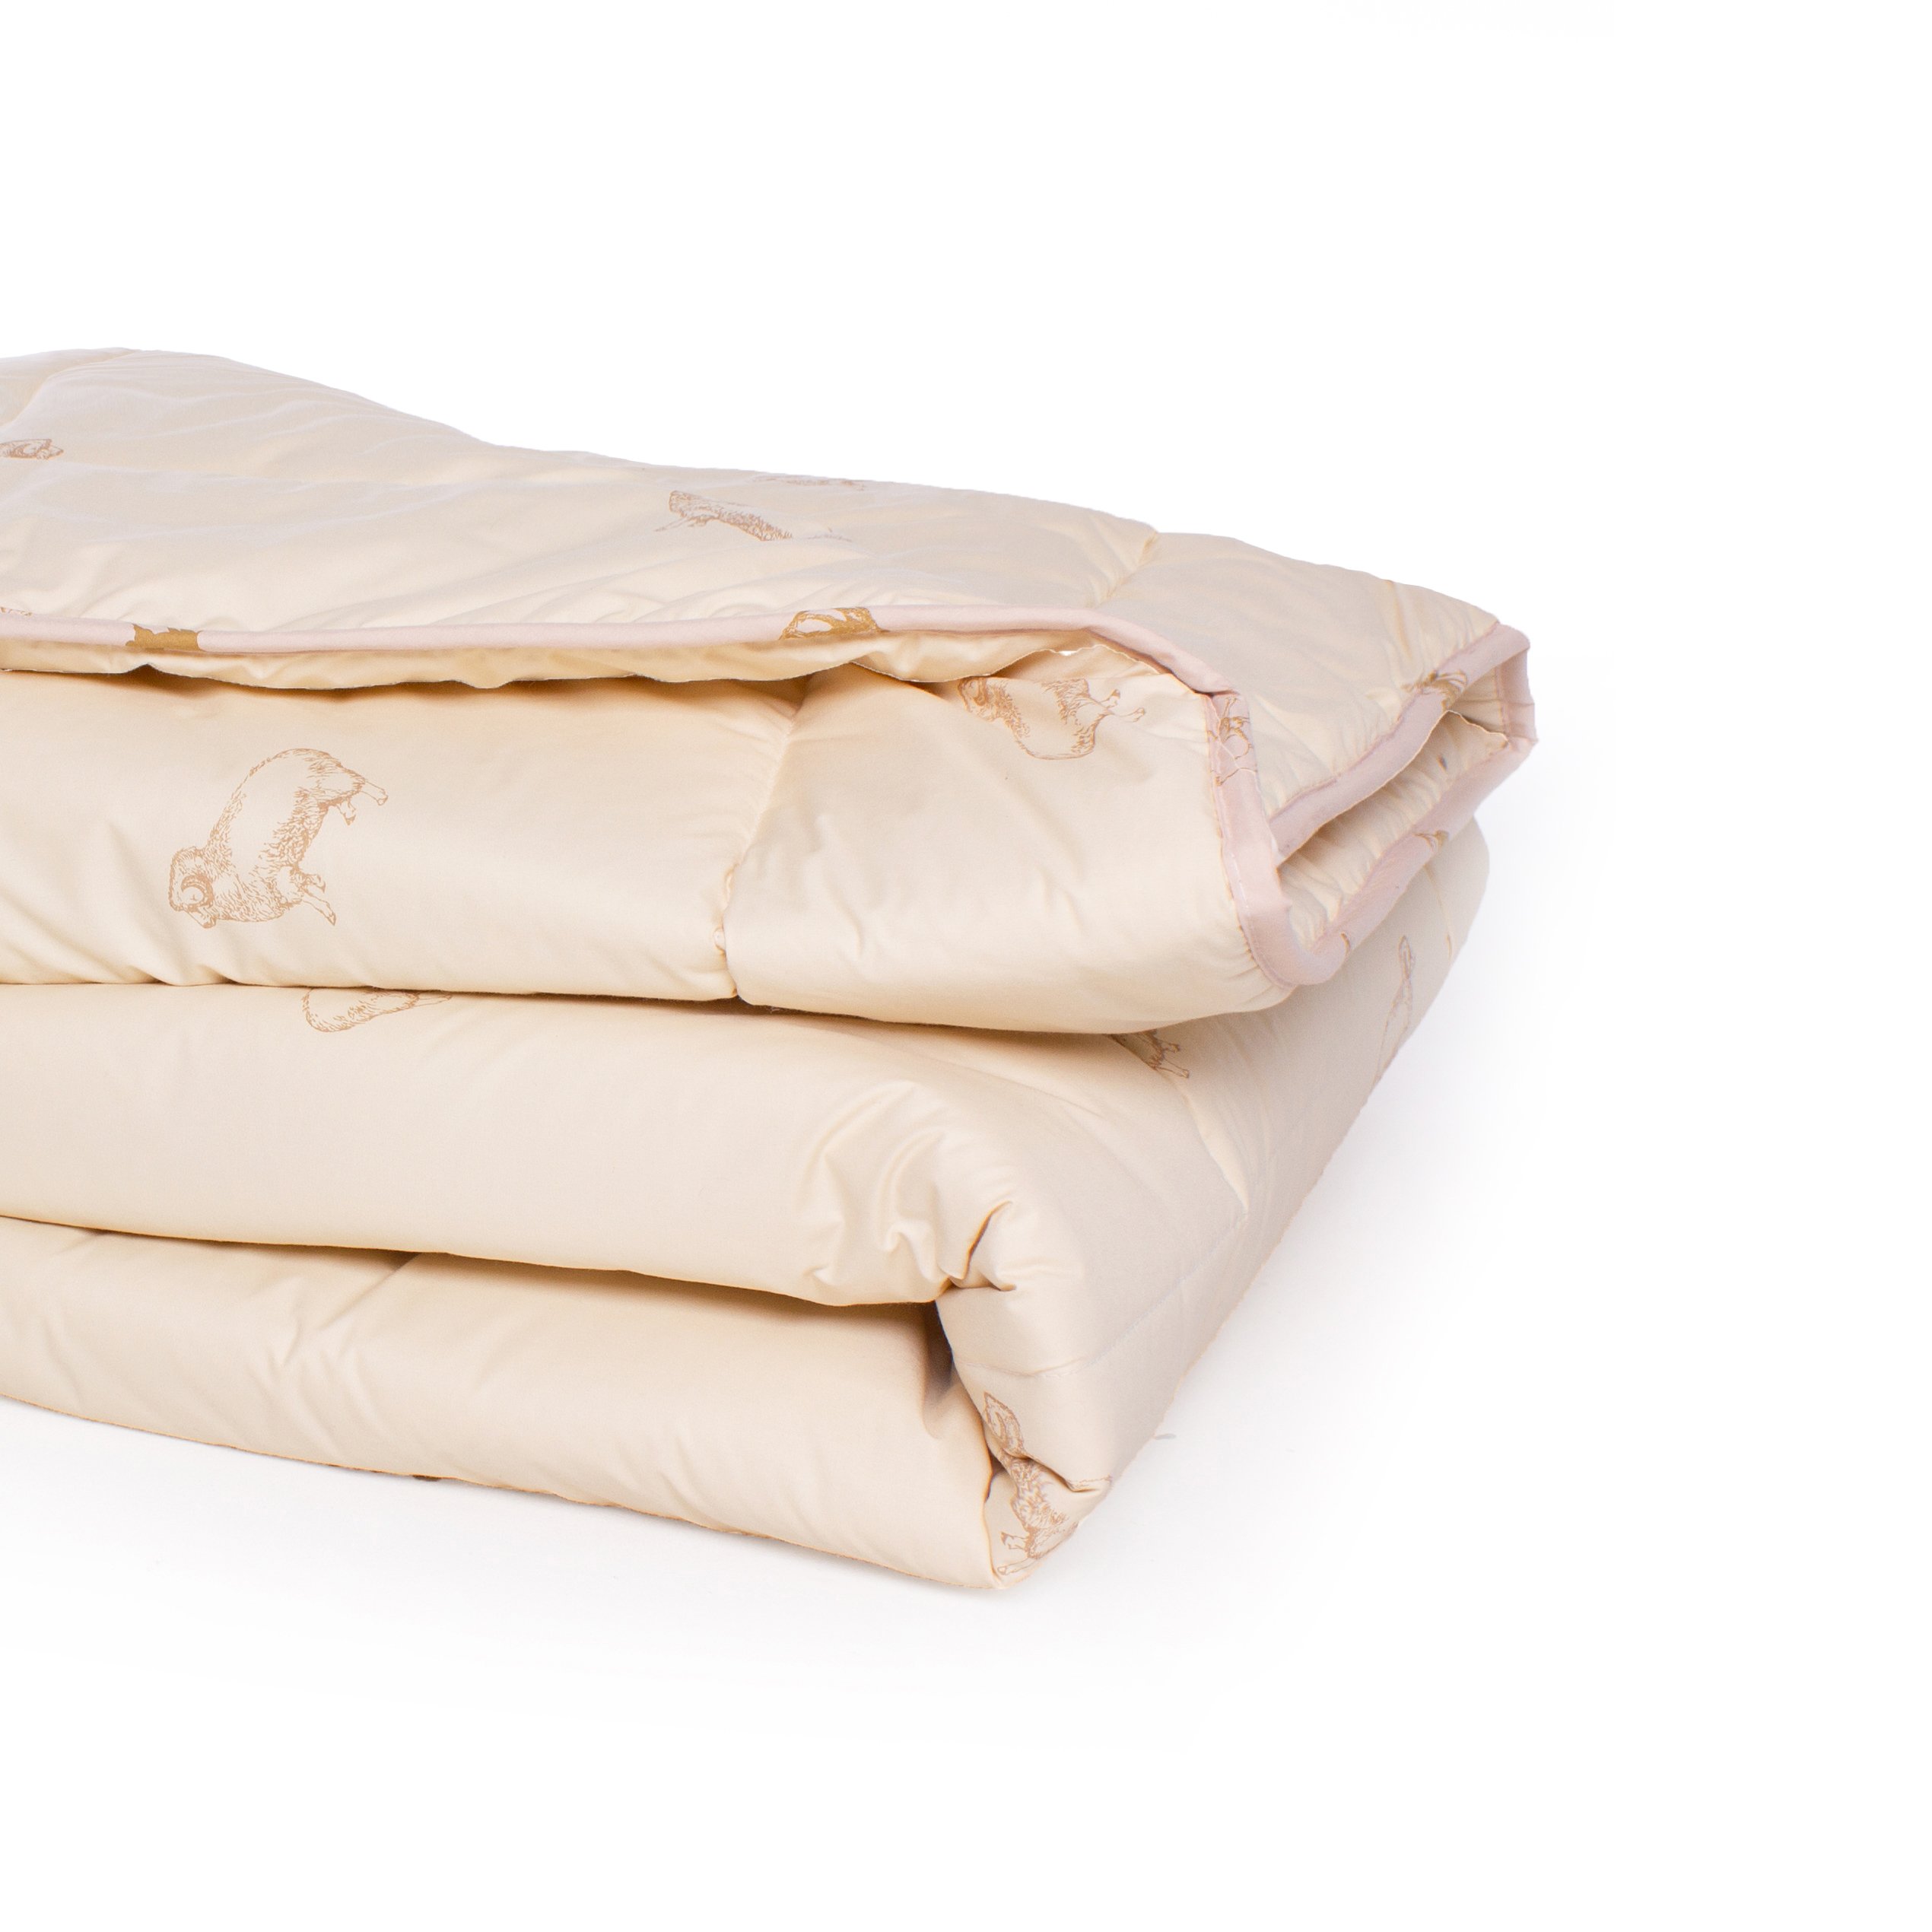 Одеяло шерстяное MirSon Gold Camel №023, демисезонное, 140x205 см, кремовое - фото 3